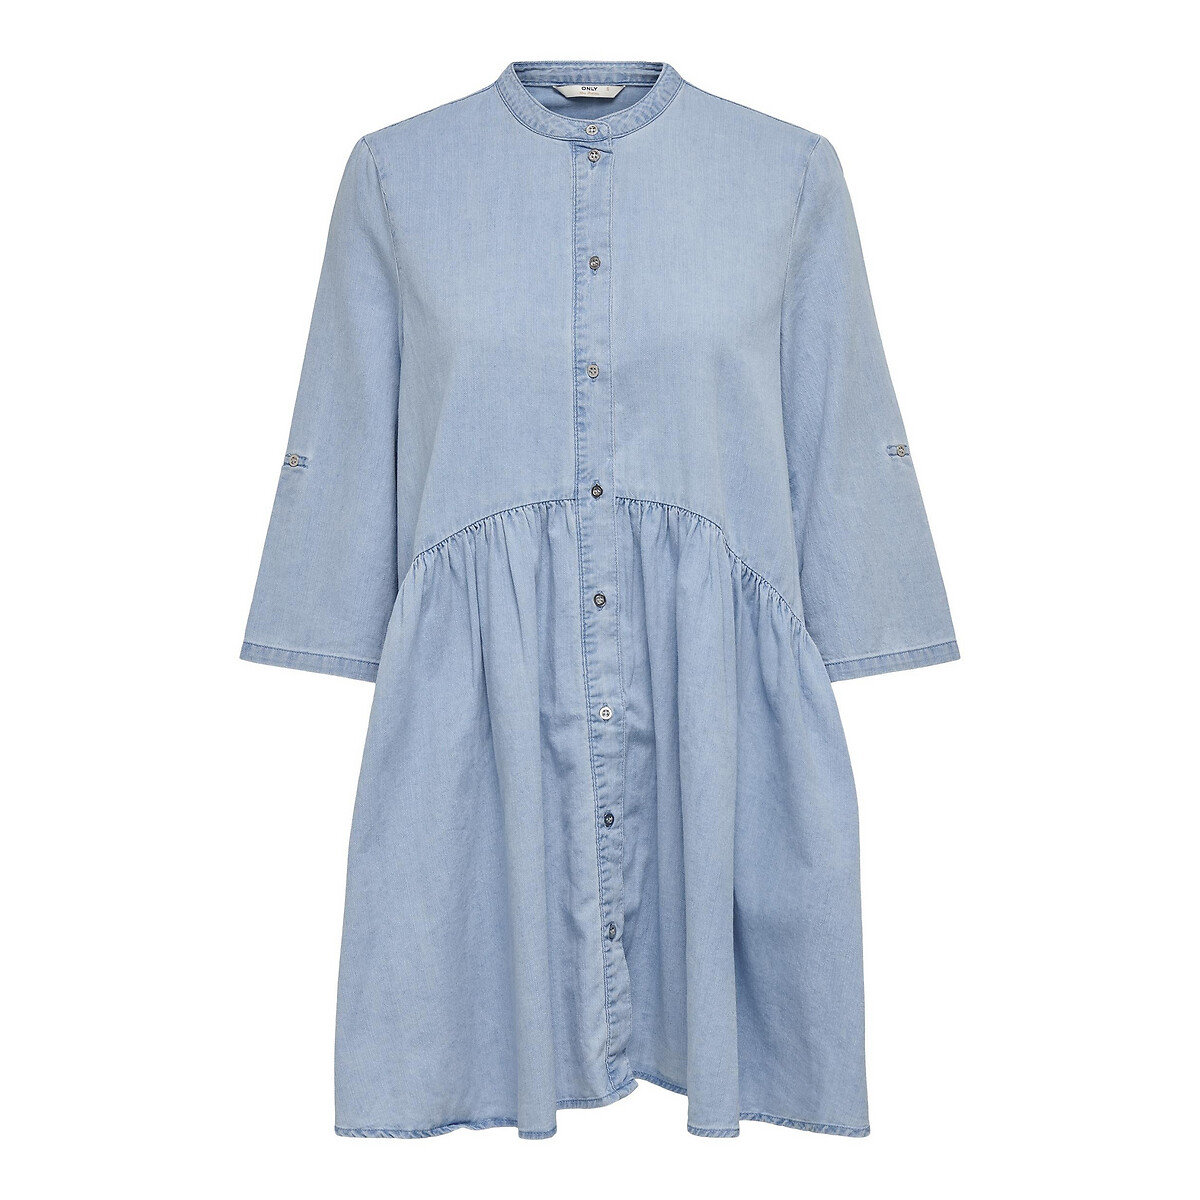 Платье-рубашка LaRedoute Из джинсовой ткани с воротником-стойкой и рукавами 34 L синий, размер L - фото 5